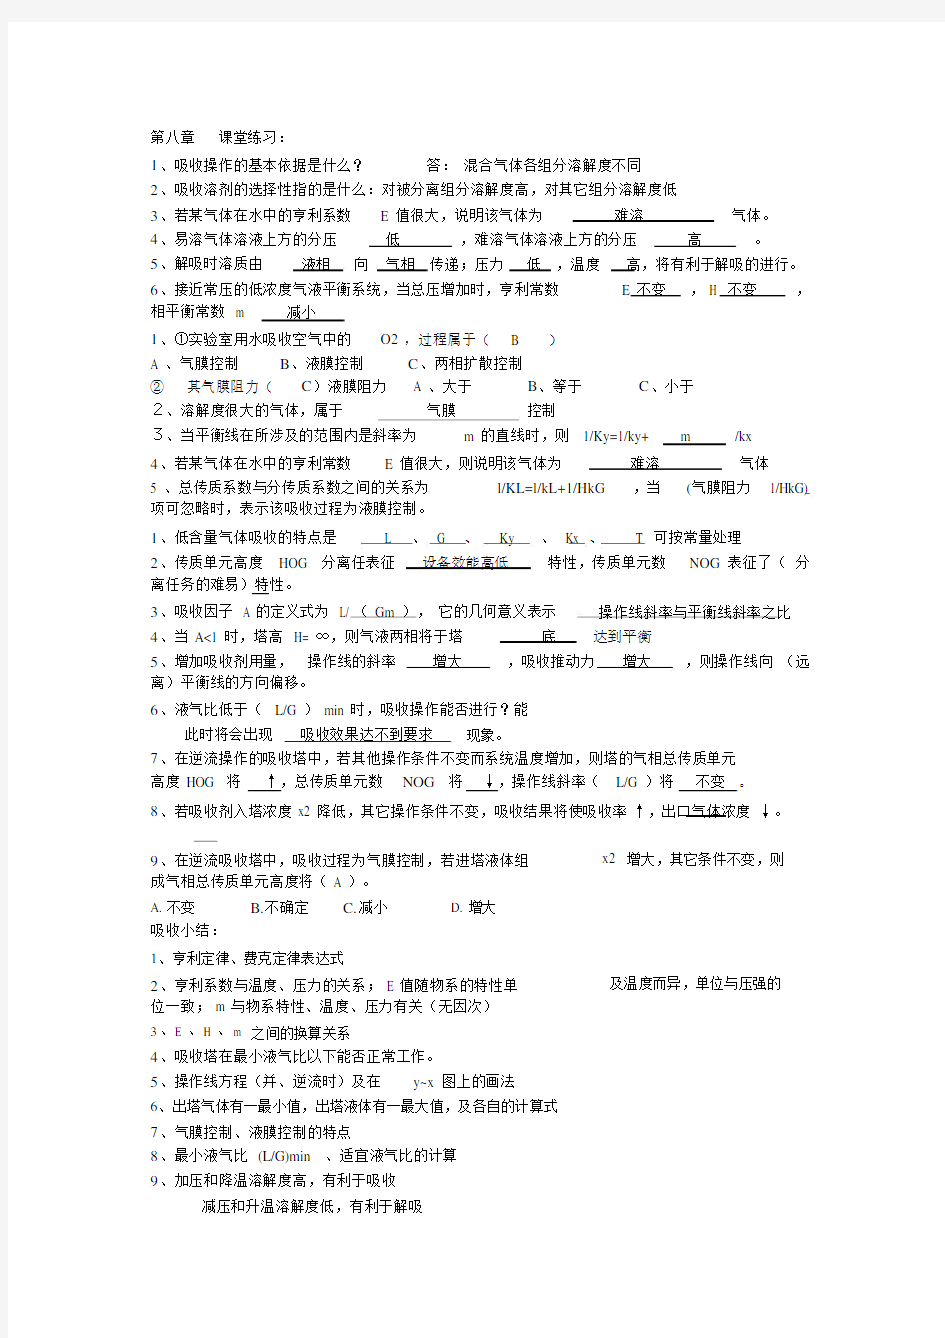 (完整版)化工原理下册习题及章节总结(陈敏恒版).doc